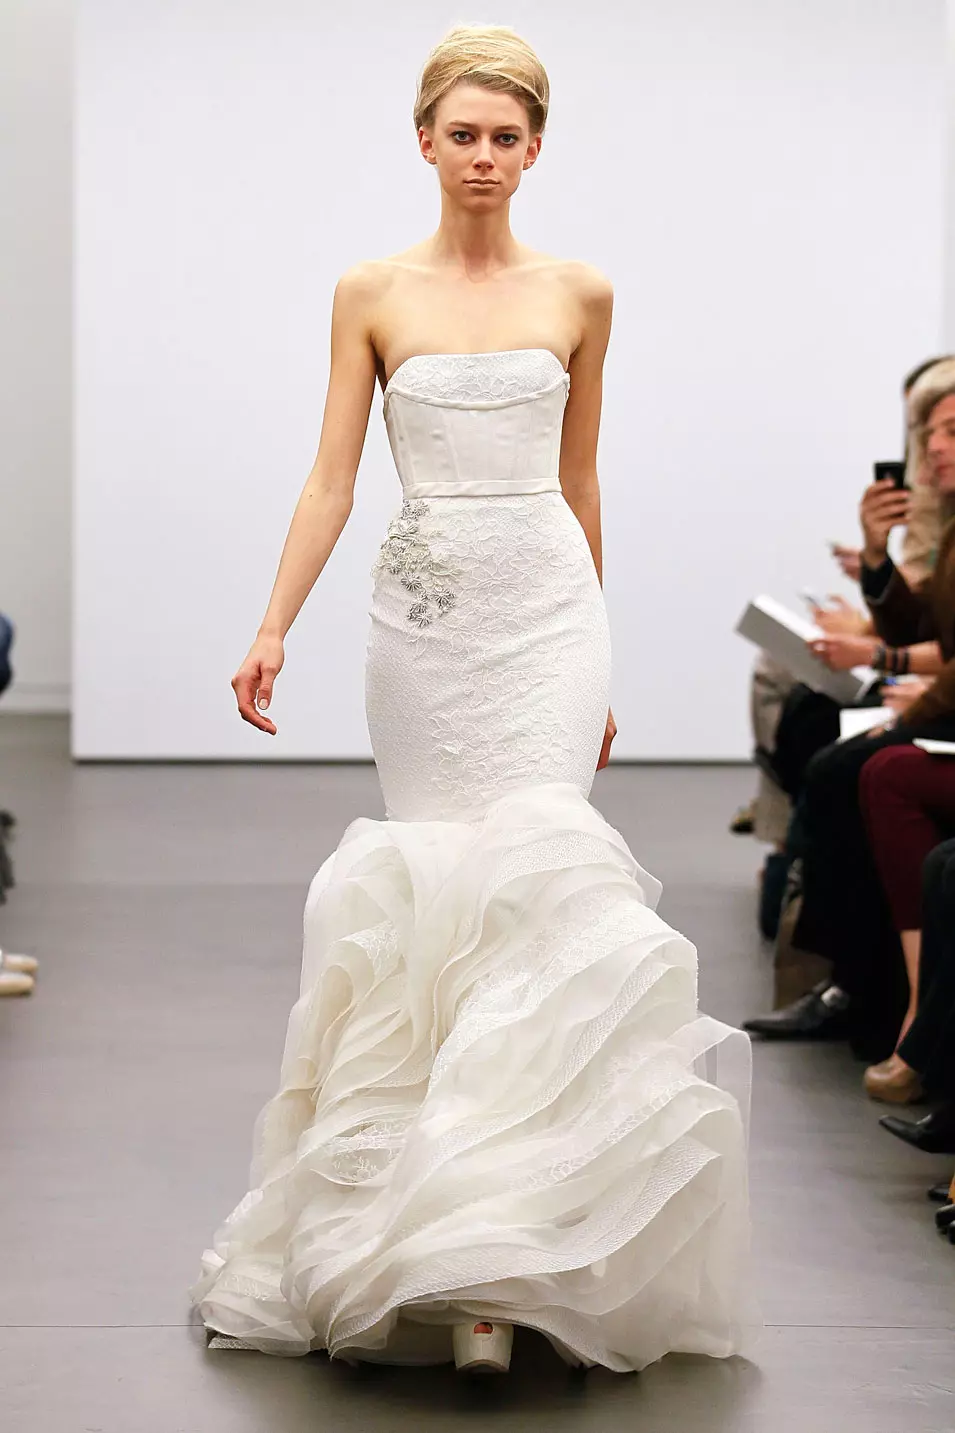 שמלת כלה מקולקציית סתיו 2013 בעיצוב וירה וונג אשר הוצגה בשבוע האופנה לכלות, ניו יורק, אוקטובר 2012